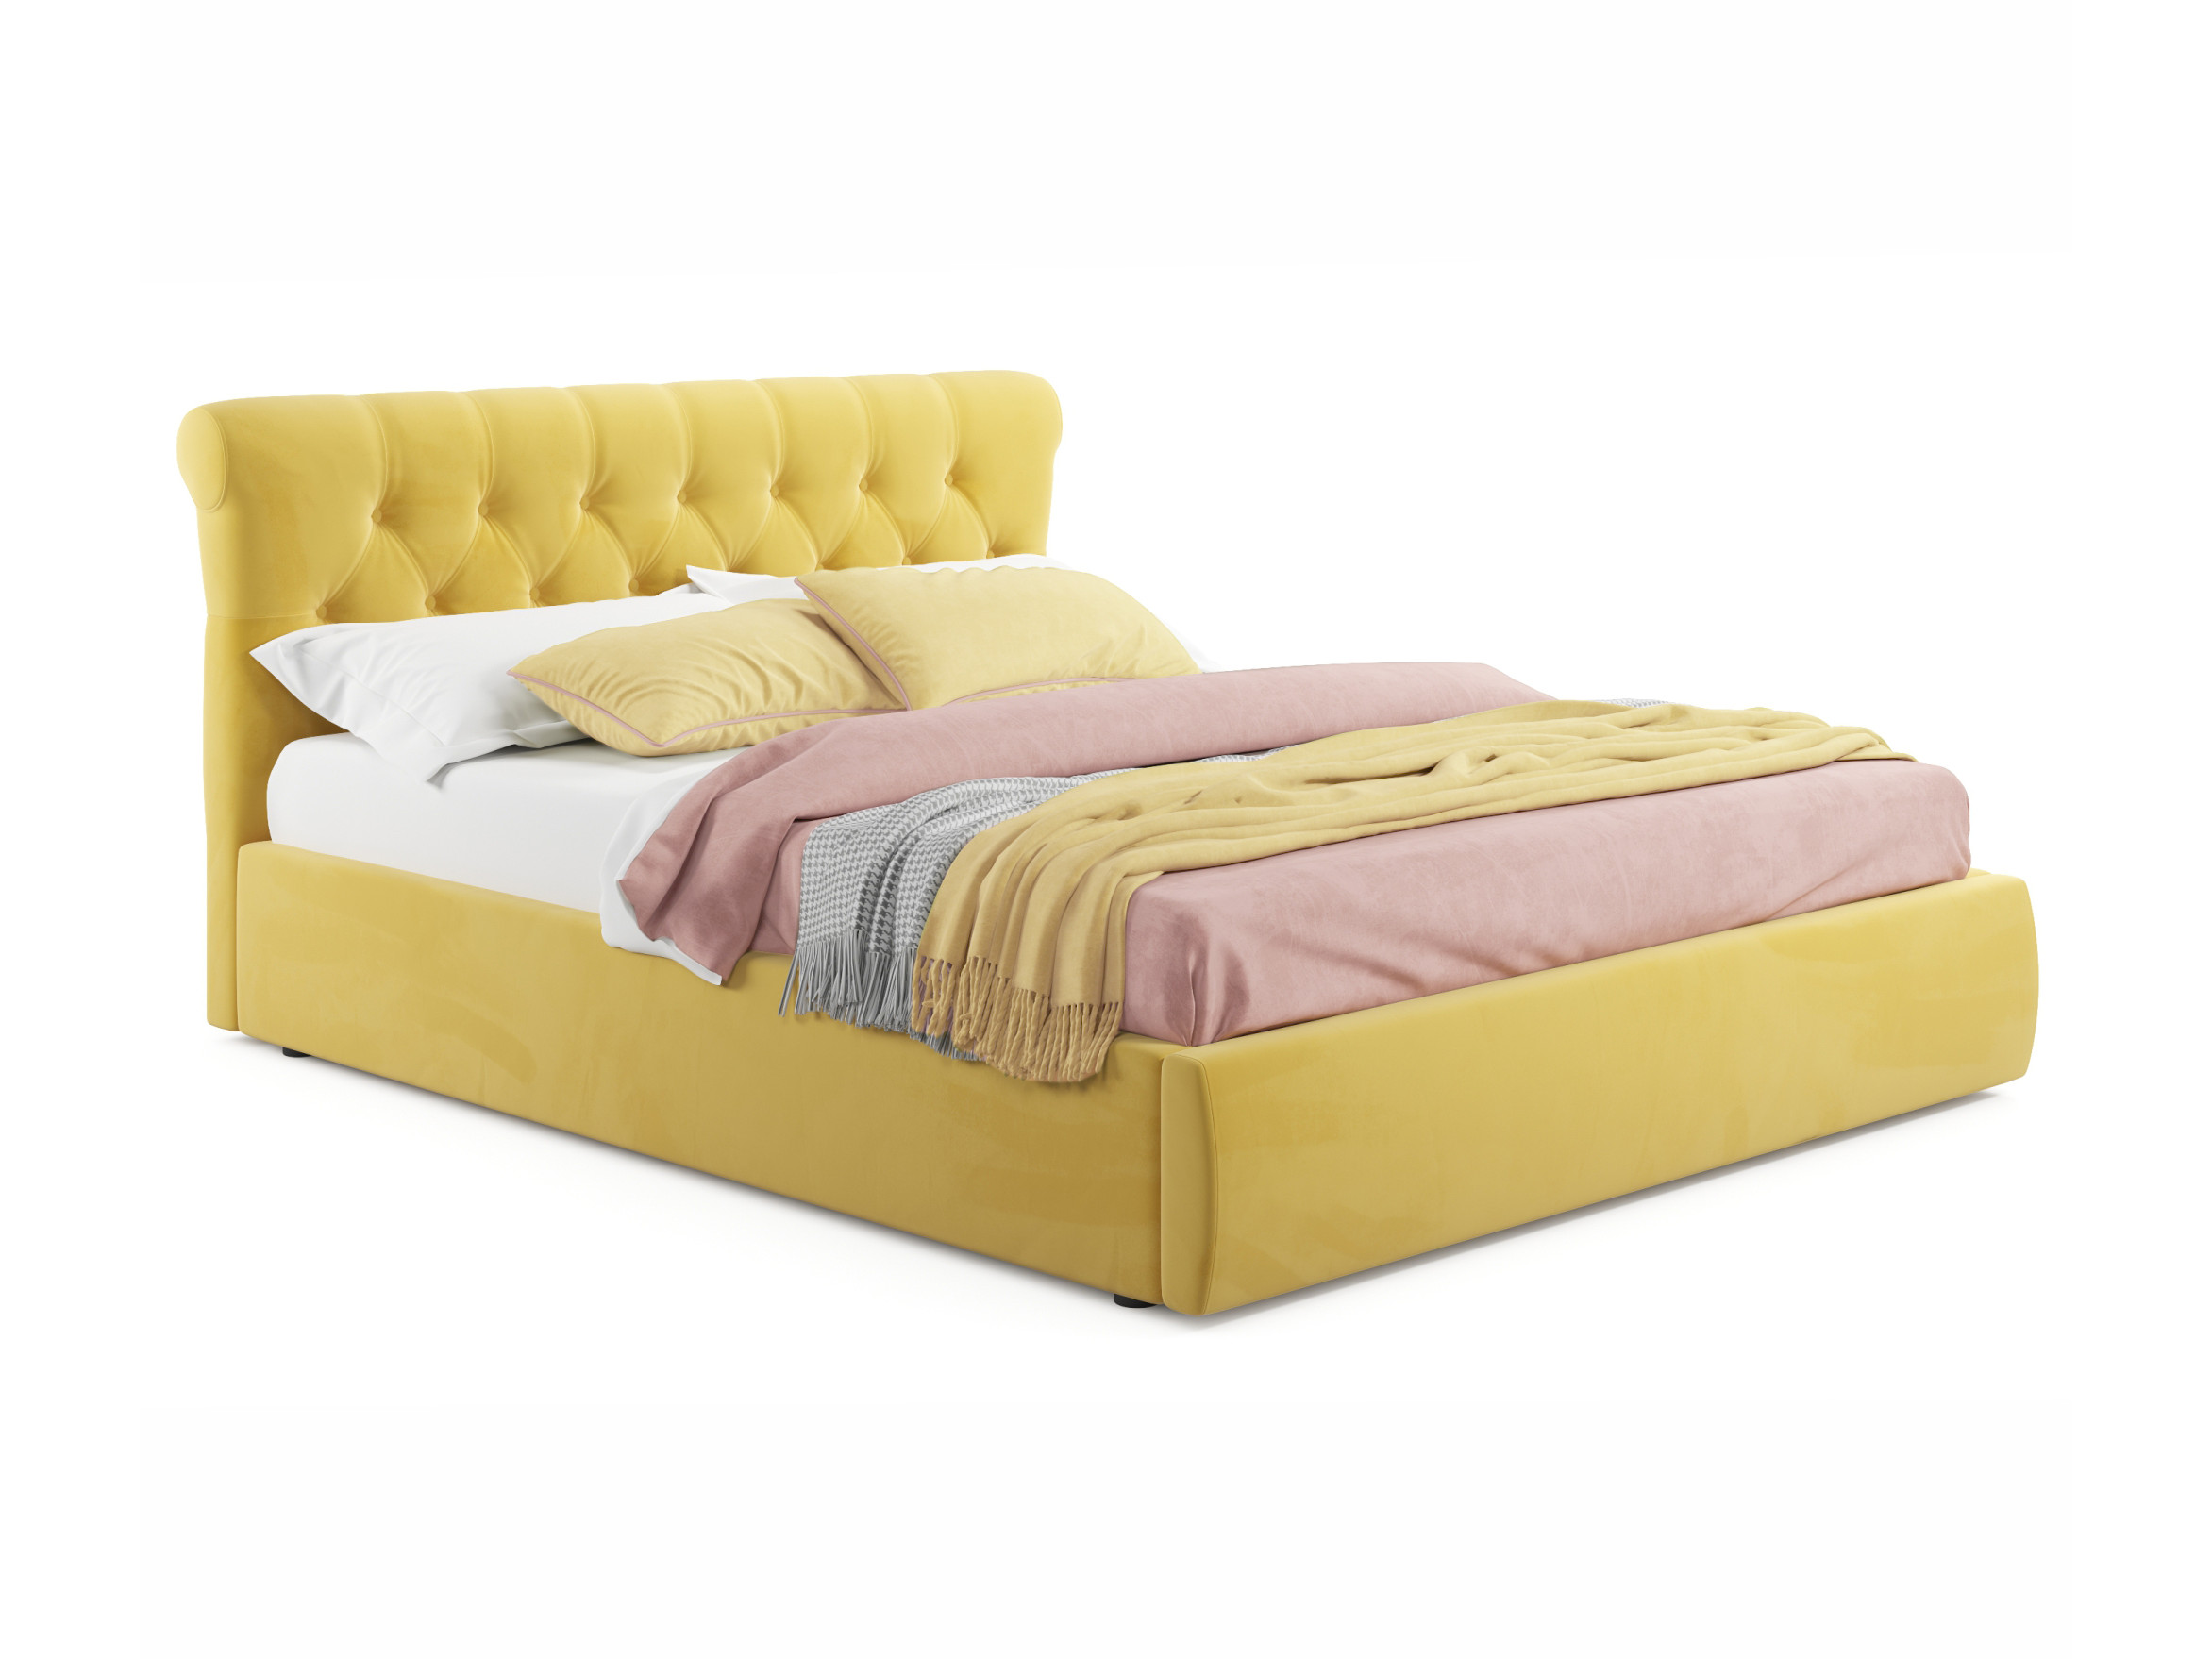 Мягкая кровать Ameli 1600 желтая с подъемным механизмом желтый, Желтый, Велюр, ДСП мягкая кровать ameli 1600 желтая с подъемным механизмом желтый желтый велюр дсп